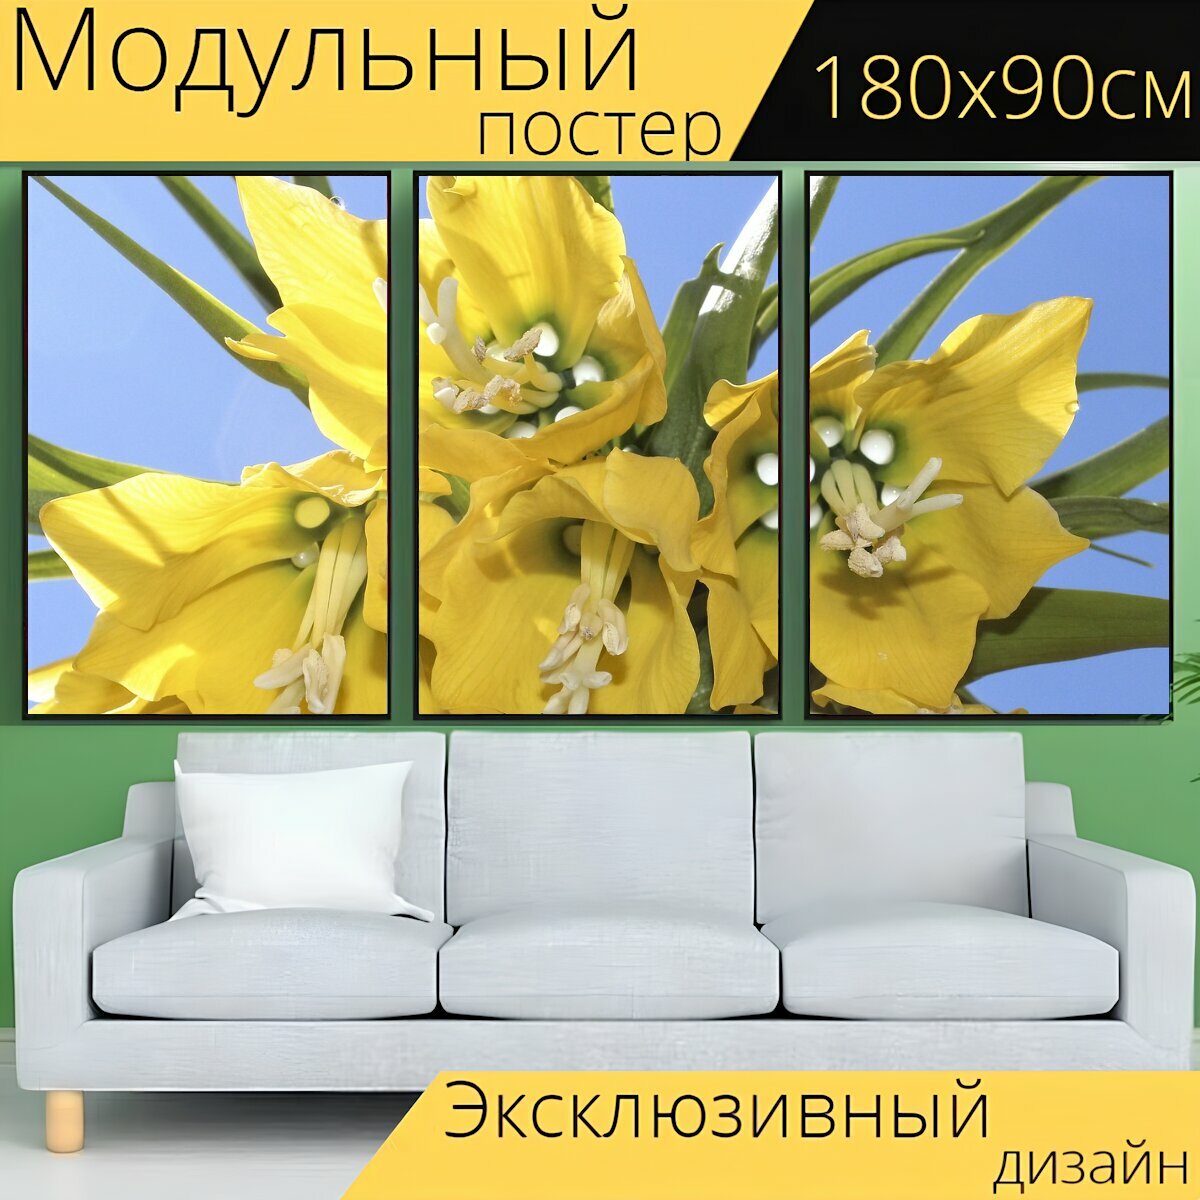 Модульный постер "Императорская корона, весна, цветы" 180 x 90 см. для интерьера